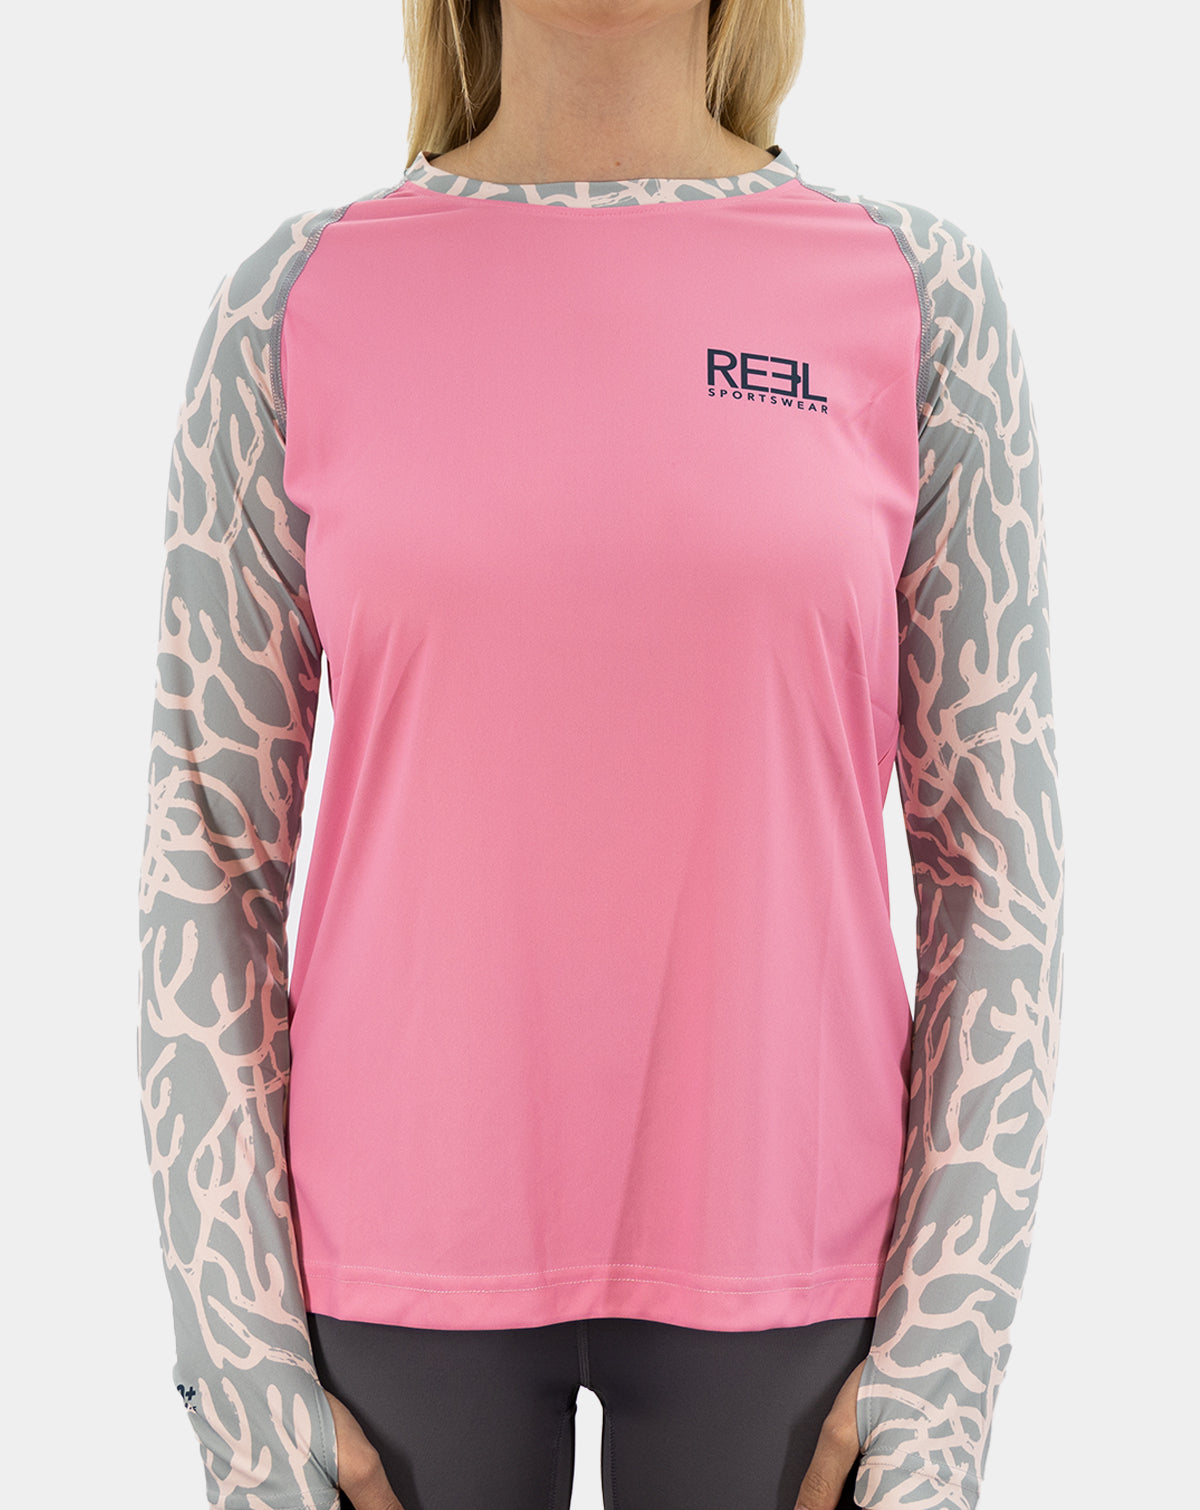 Jasmine women's long sleeve fishing shirt upf 50 - Reel Sportswear